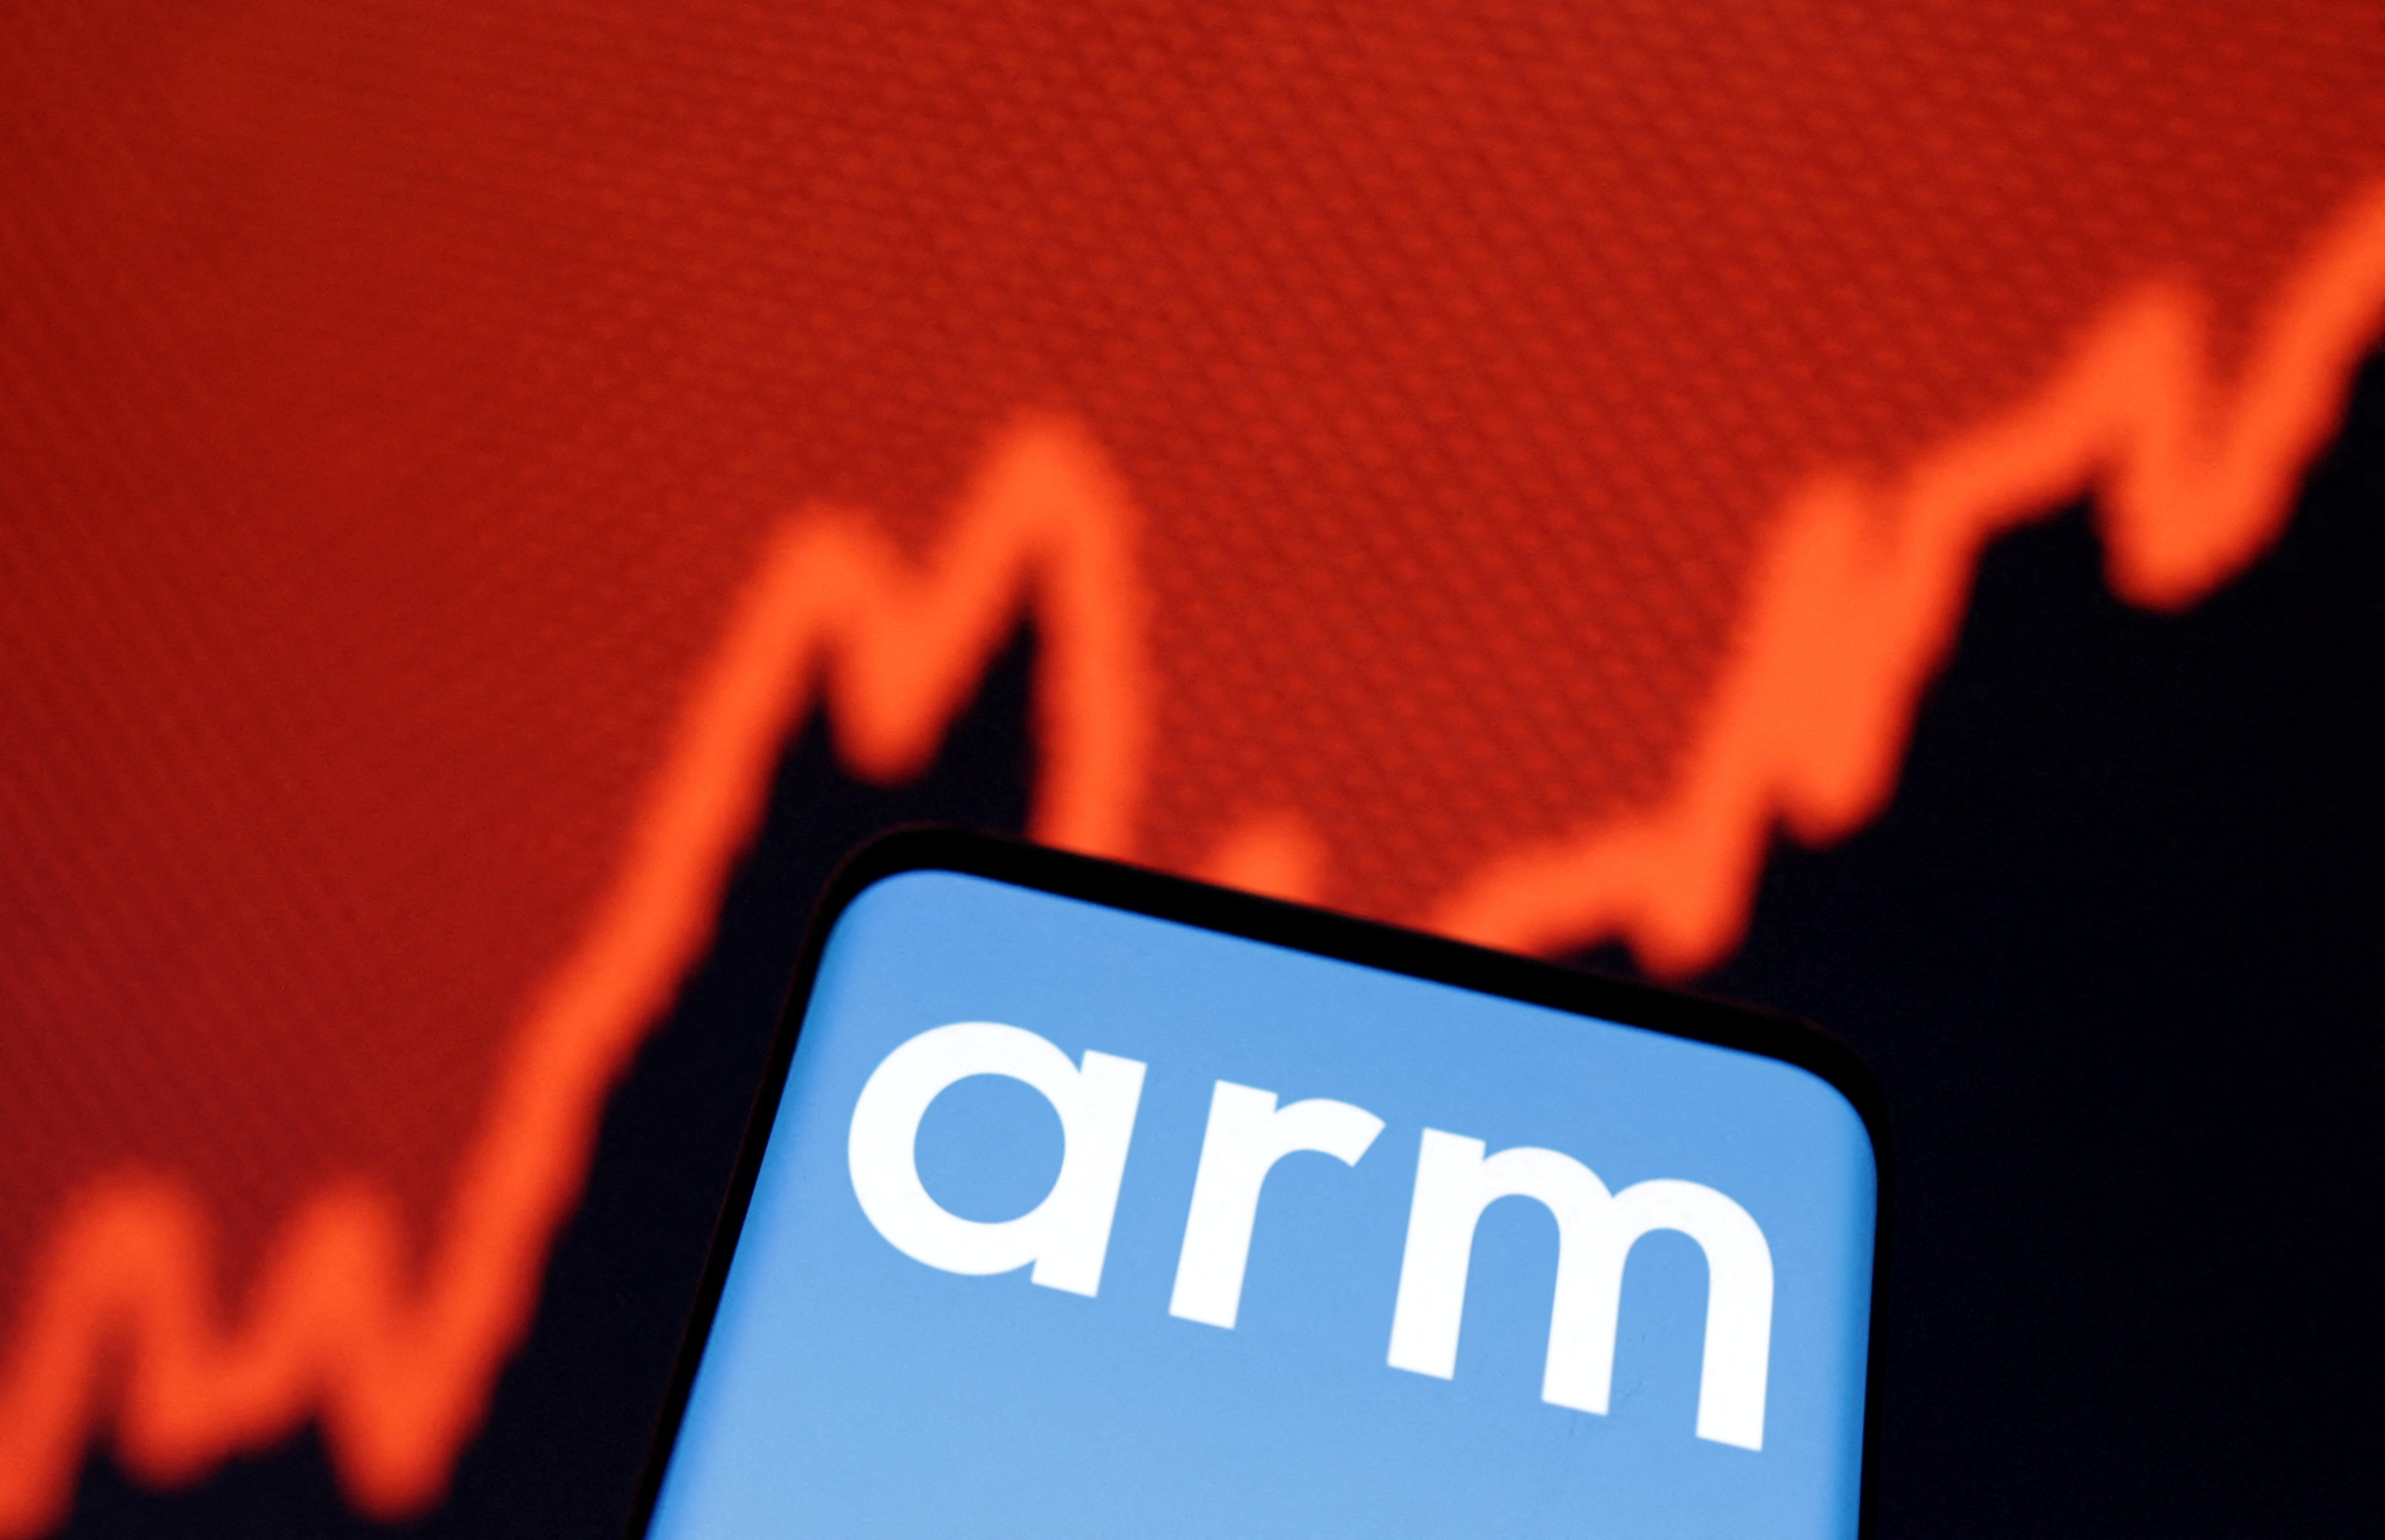  英特尔正在洽谈成为 Arm IPO 的主要投资者——消息来源